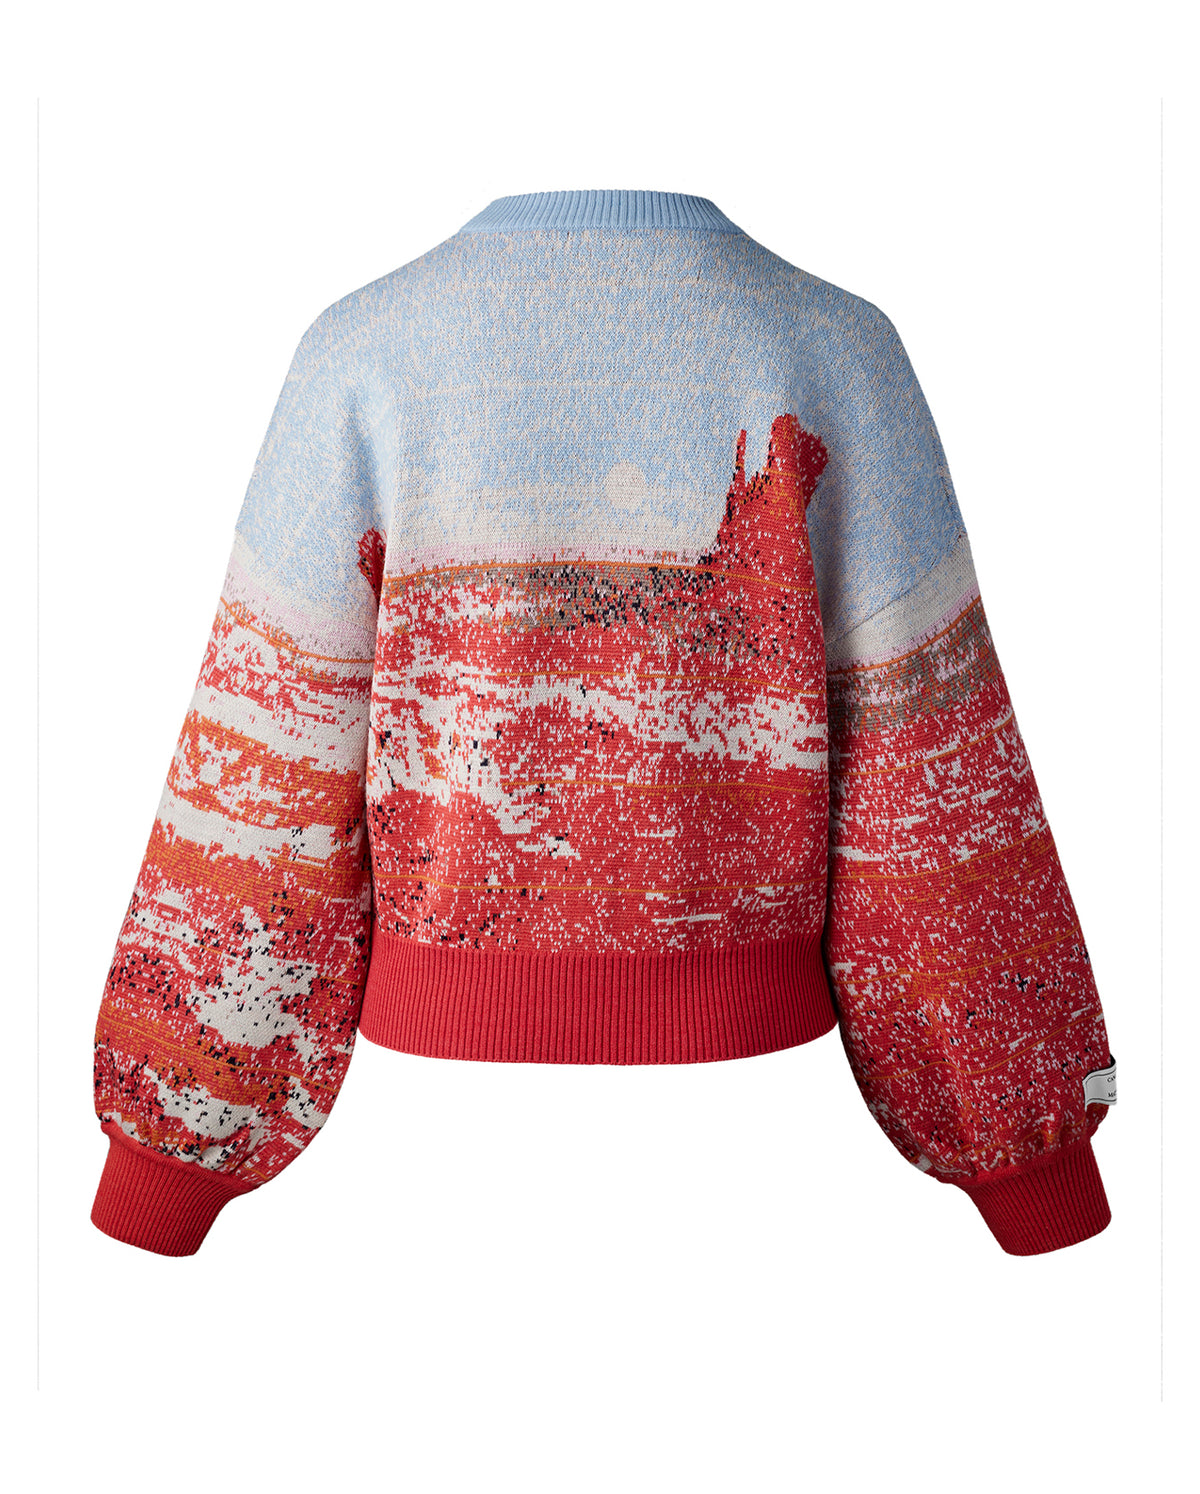 Landscape Wool Knit Sweater